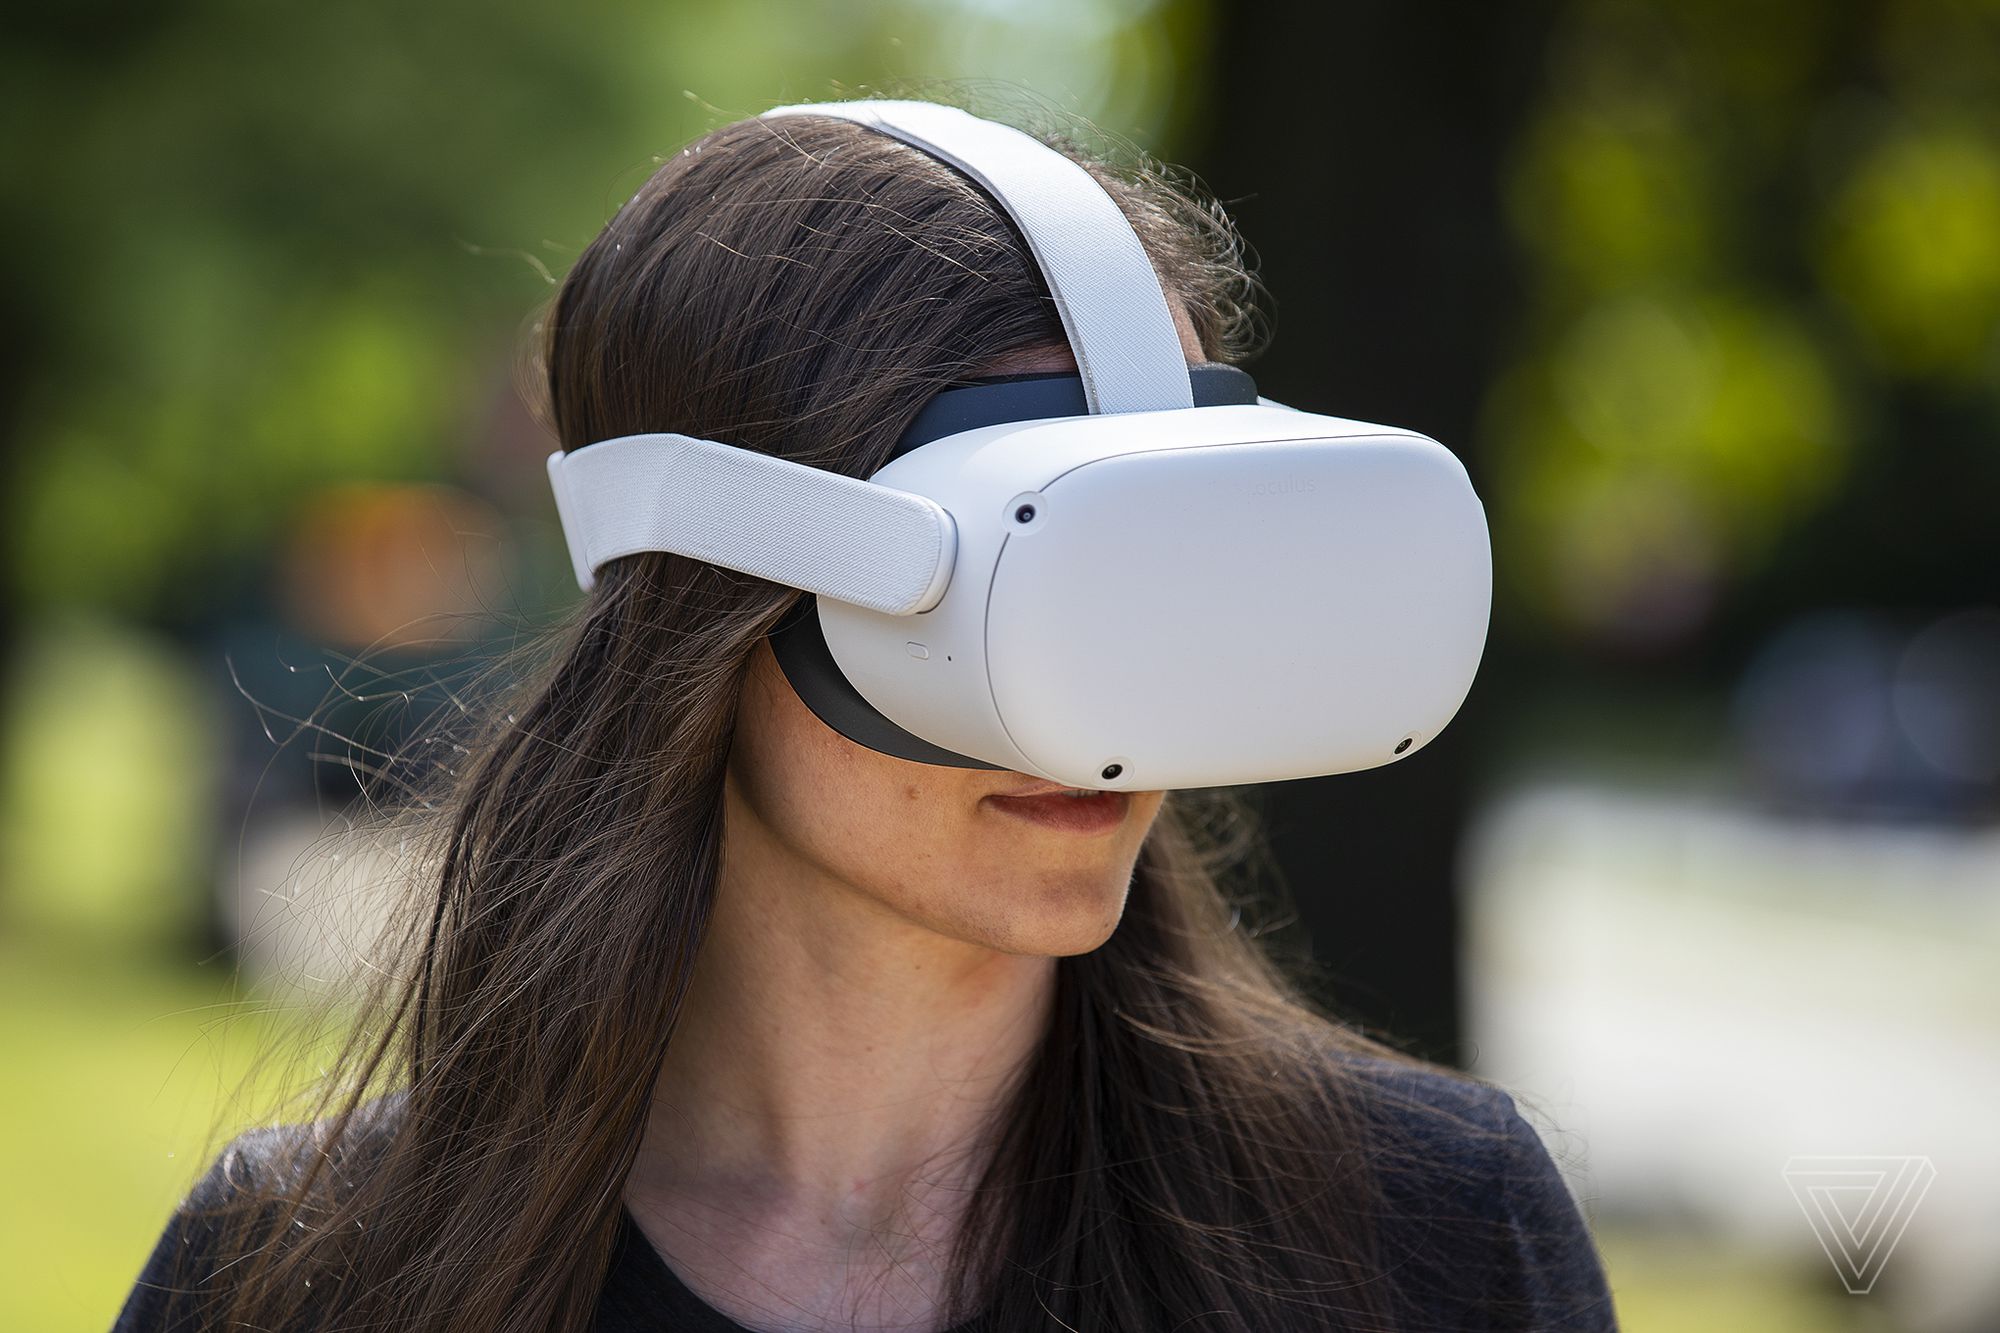 图片展示了一位长发女性戴着白色的虚拟现实头盔，似乎正在体验虚拟现实内容。头盔遮住了她的眼睛。